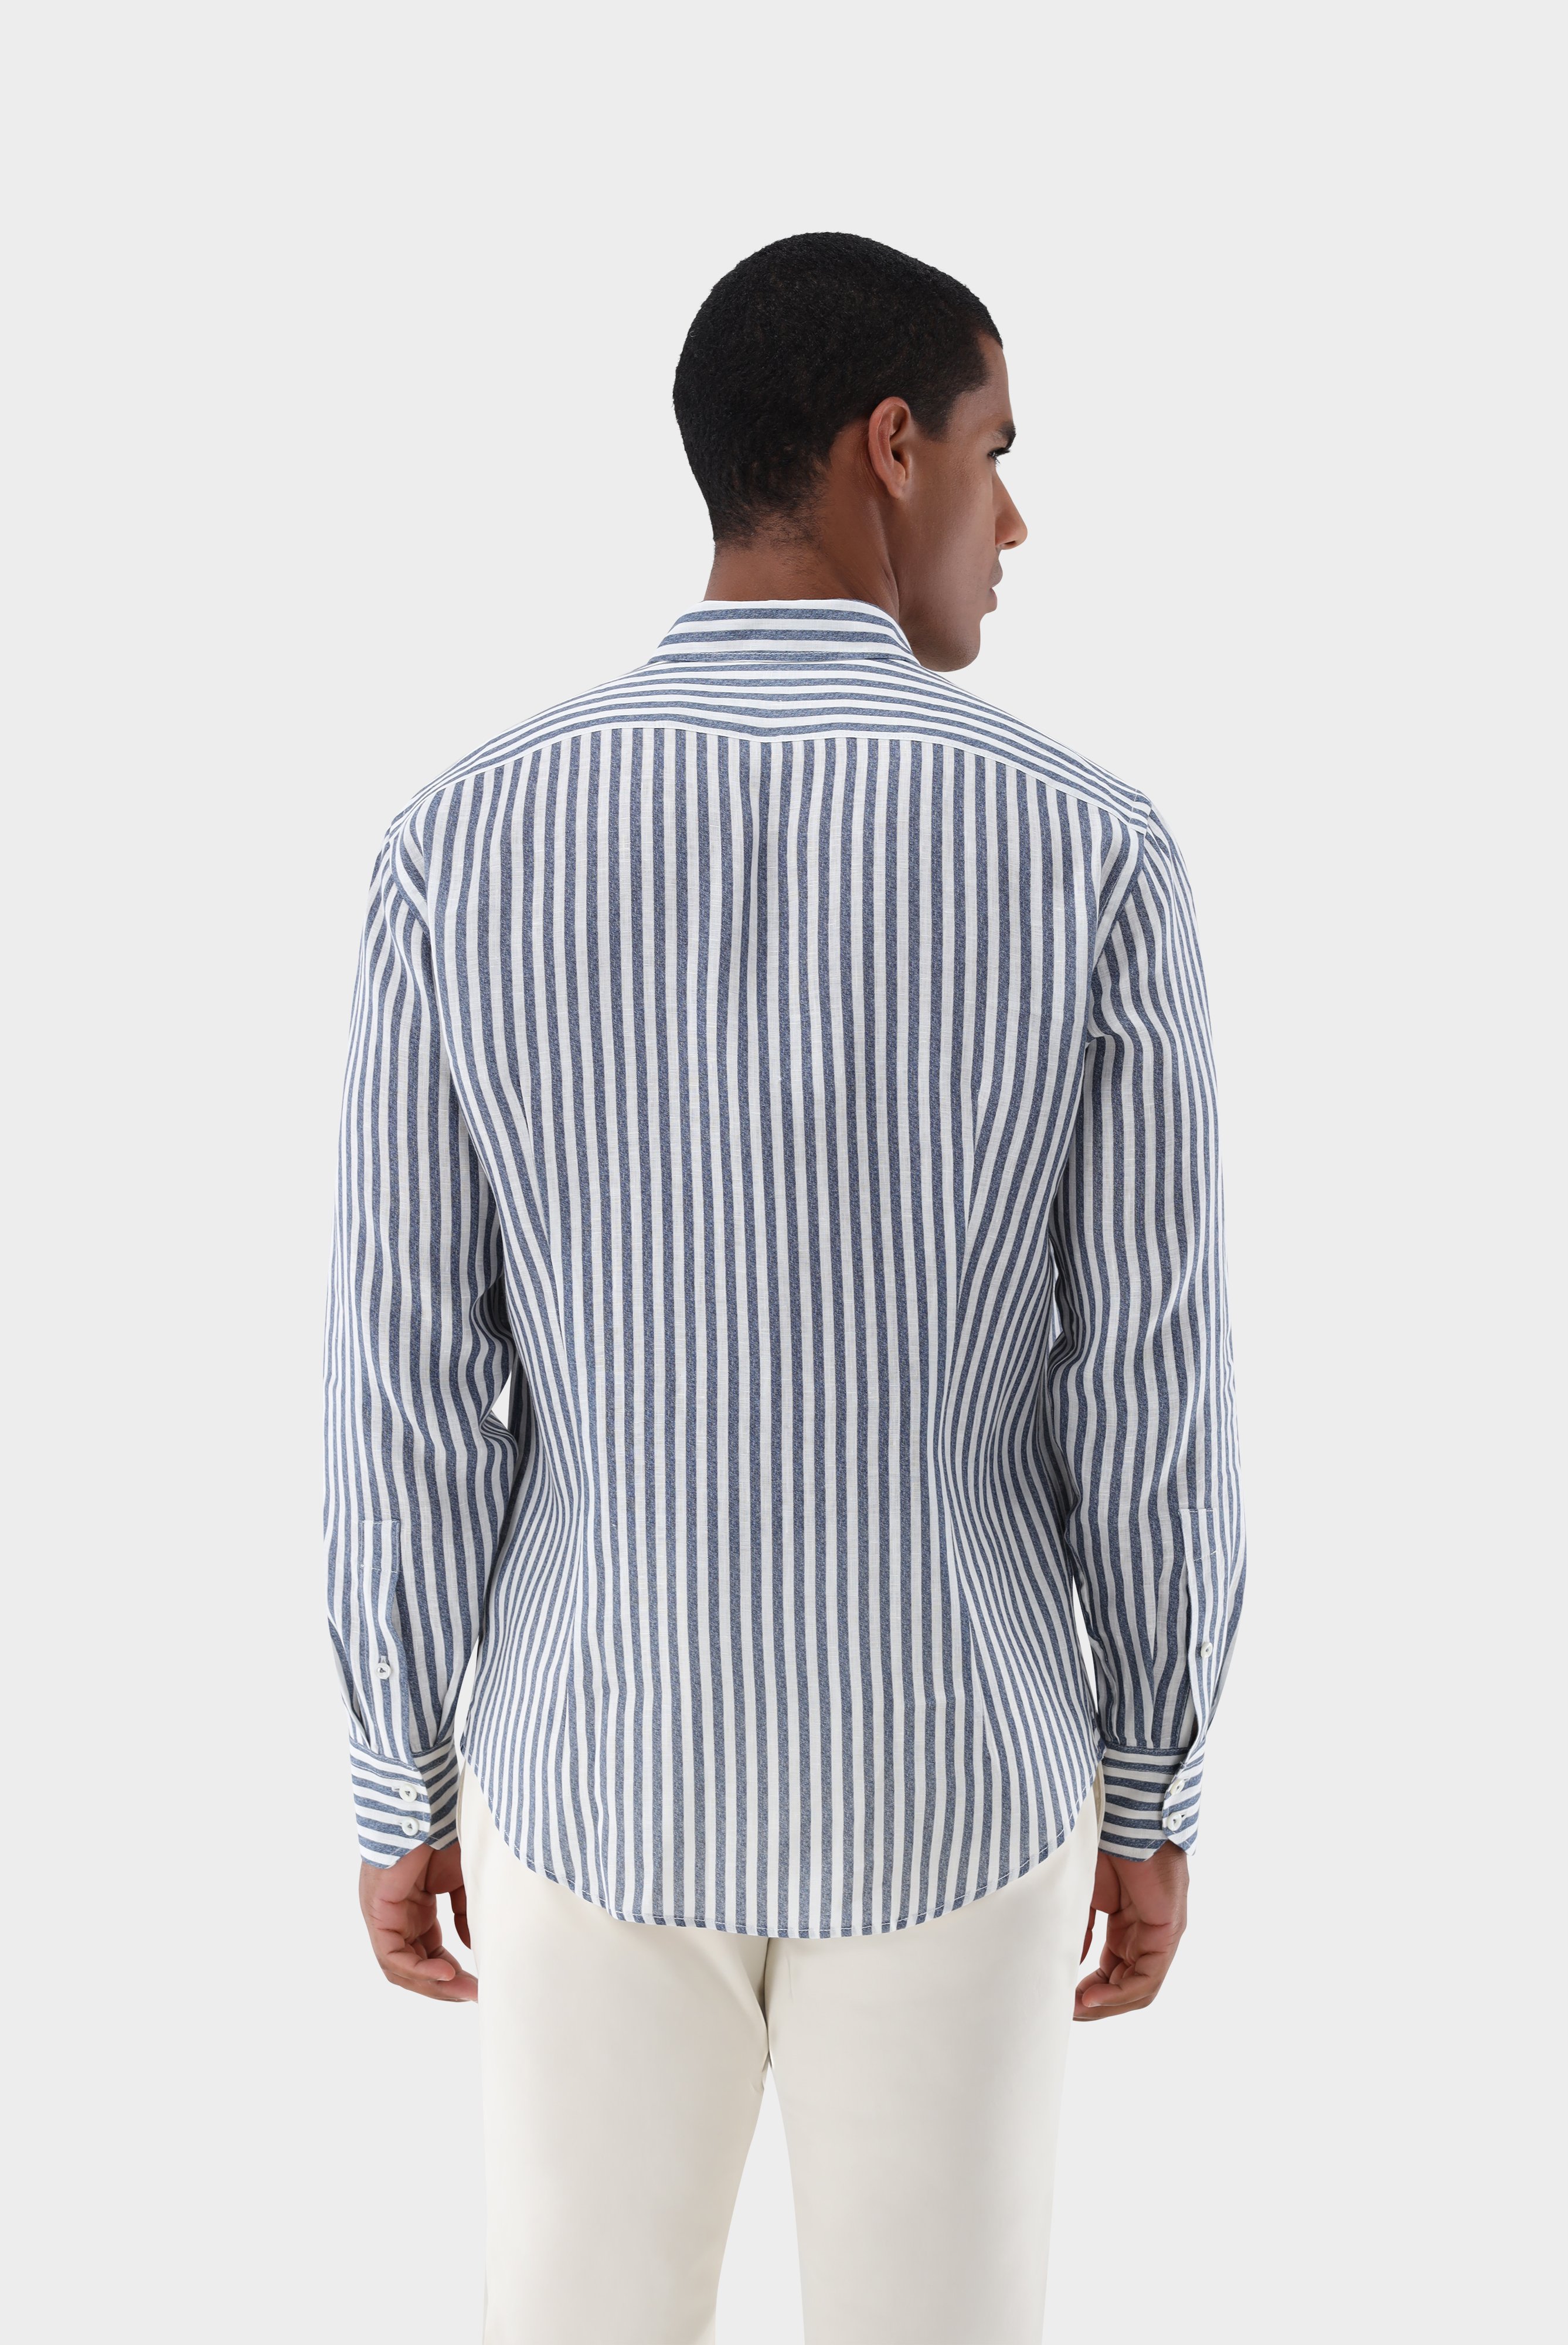 Casual Hemden+Leinenhemd mit Streifen-Druck Tailor Fit+20.2013.9V.170352.780.38